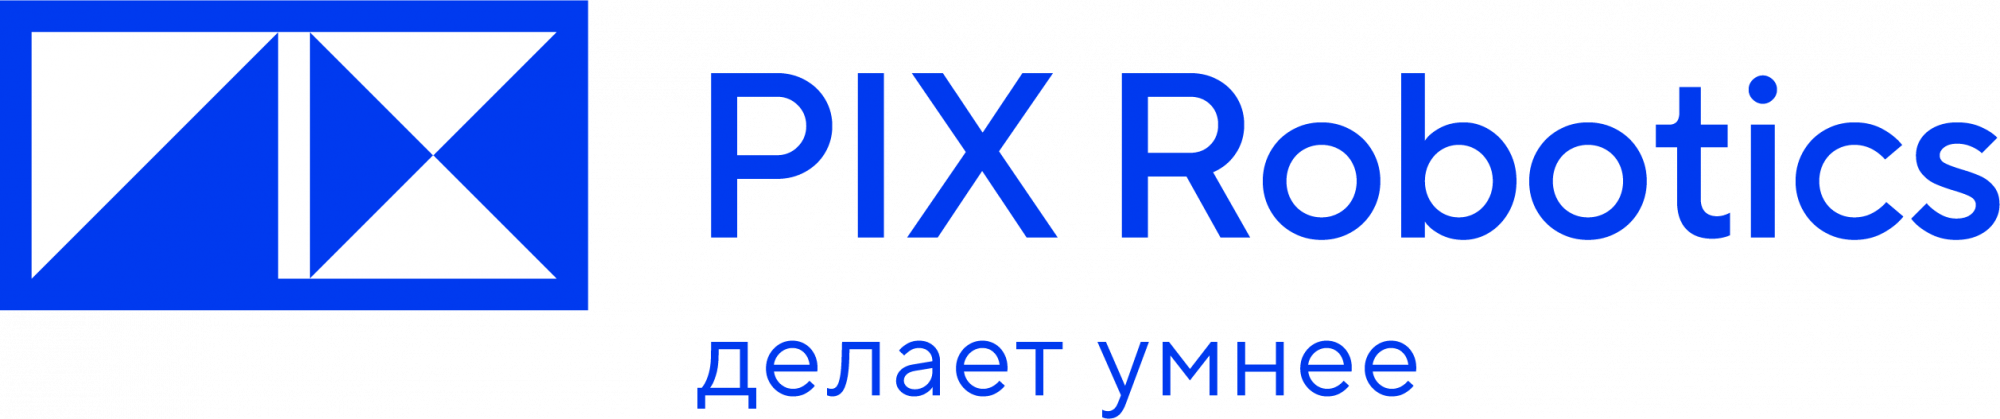 PIX Robotics вступила в ассоциацию РУССОФТ